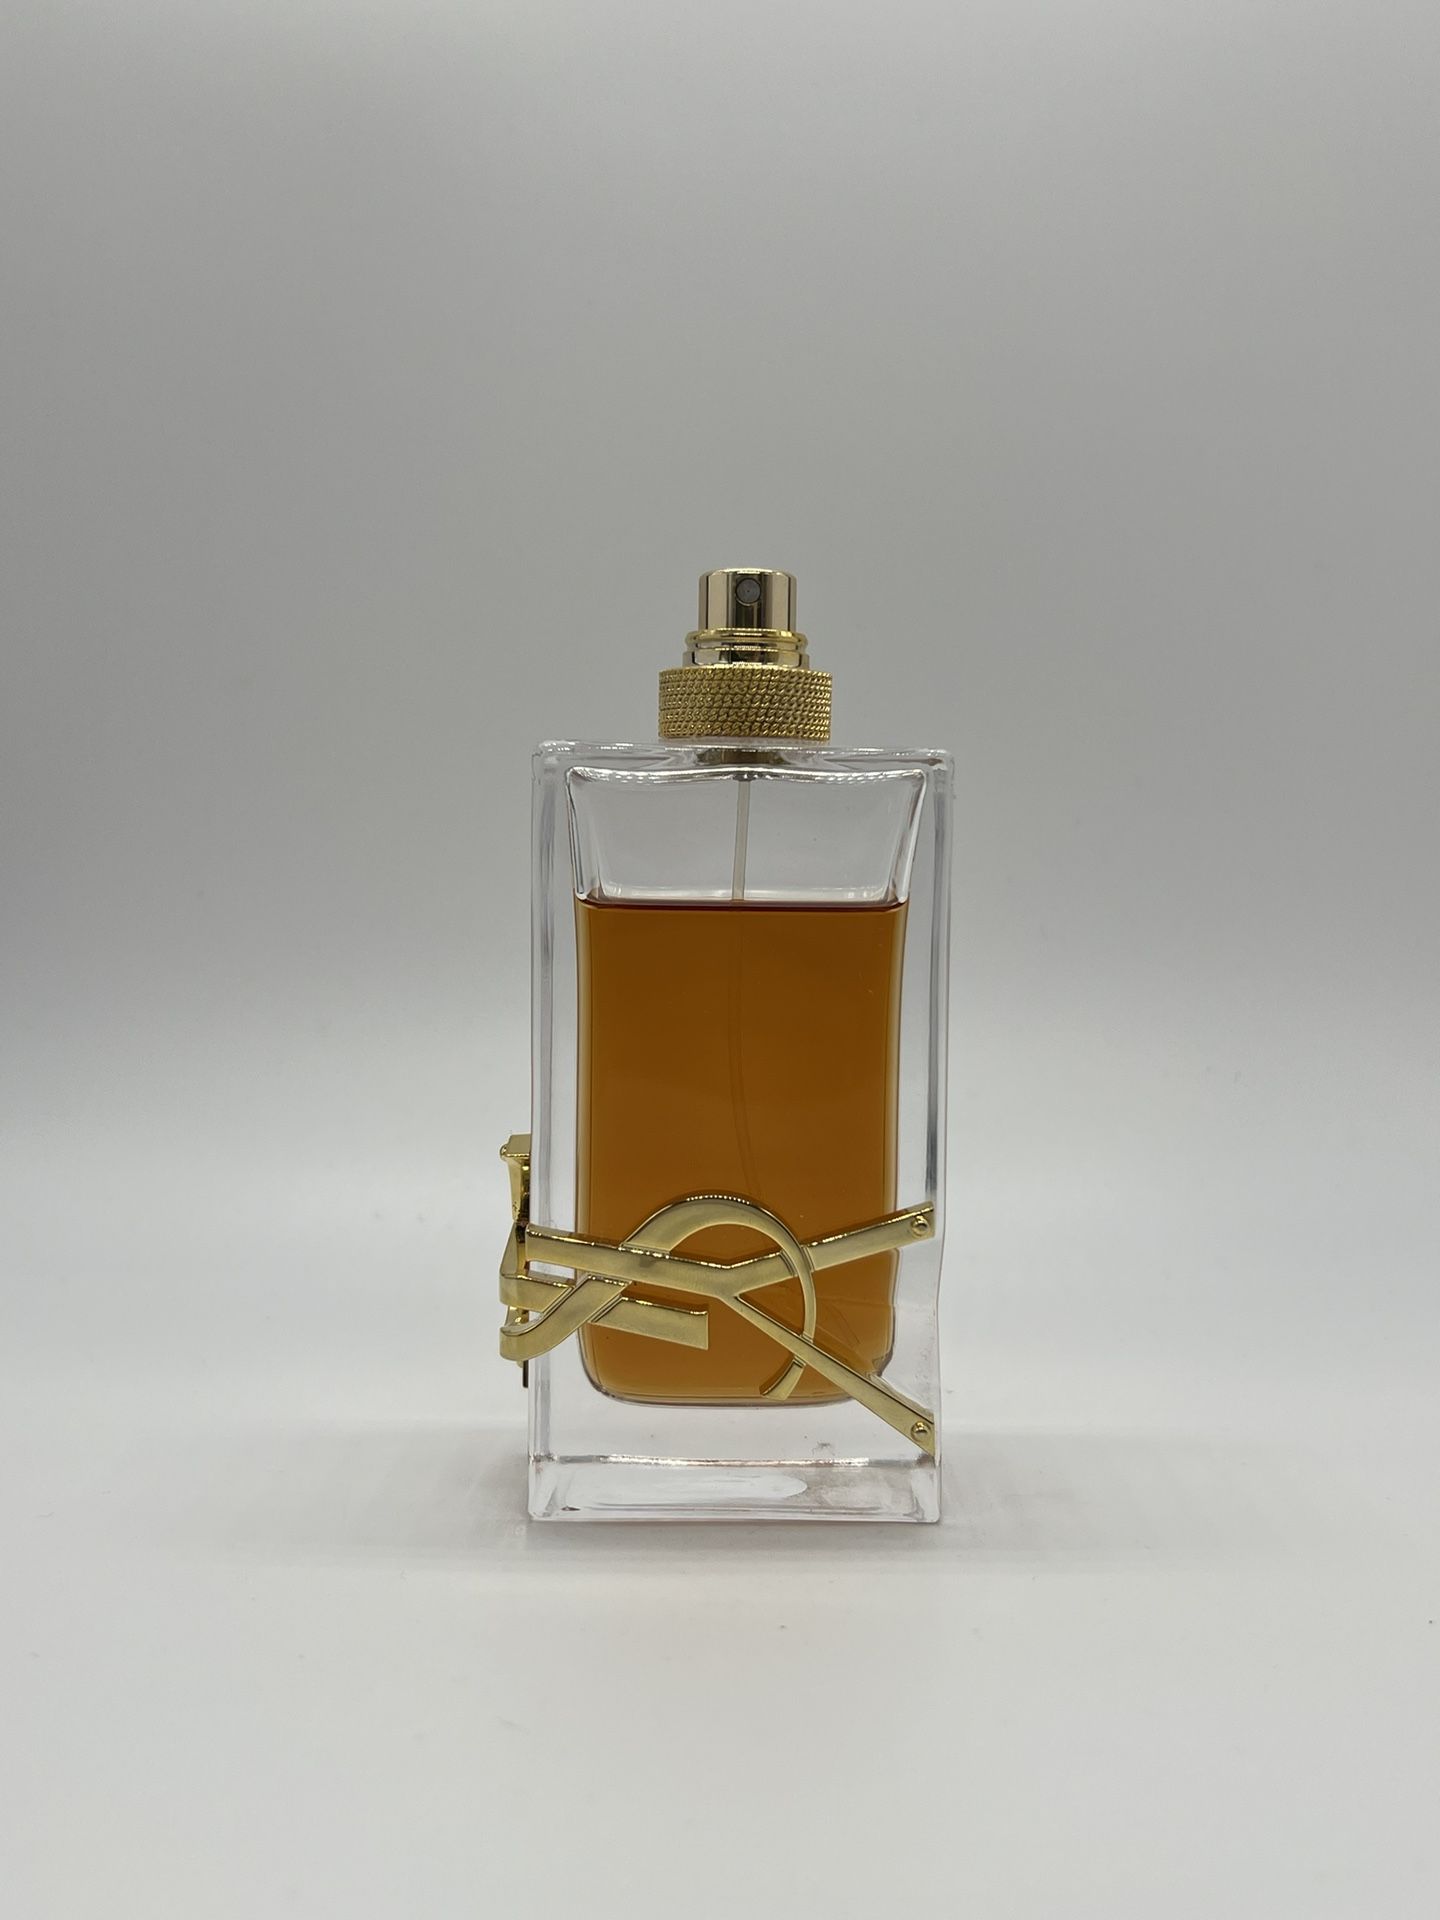 YSL Libre Eau de Parfum Intense 3 oz (90 ml) for Sale in Las Vegas, NV -  OfferUp